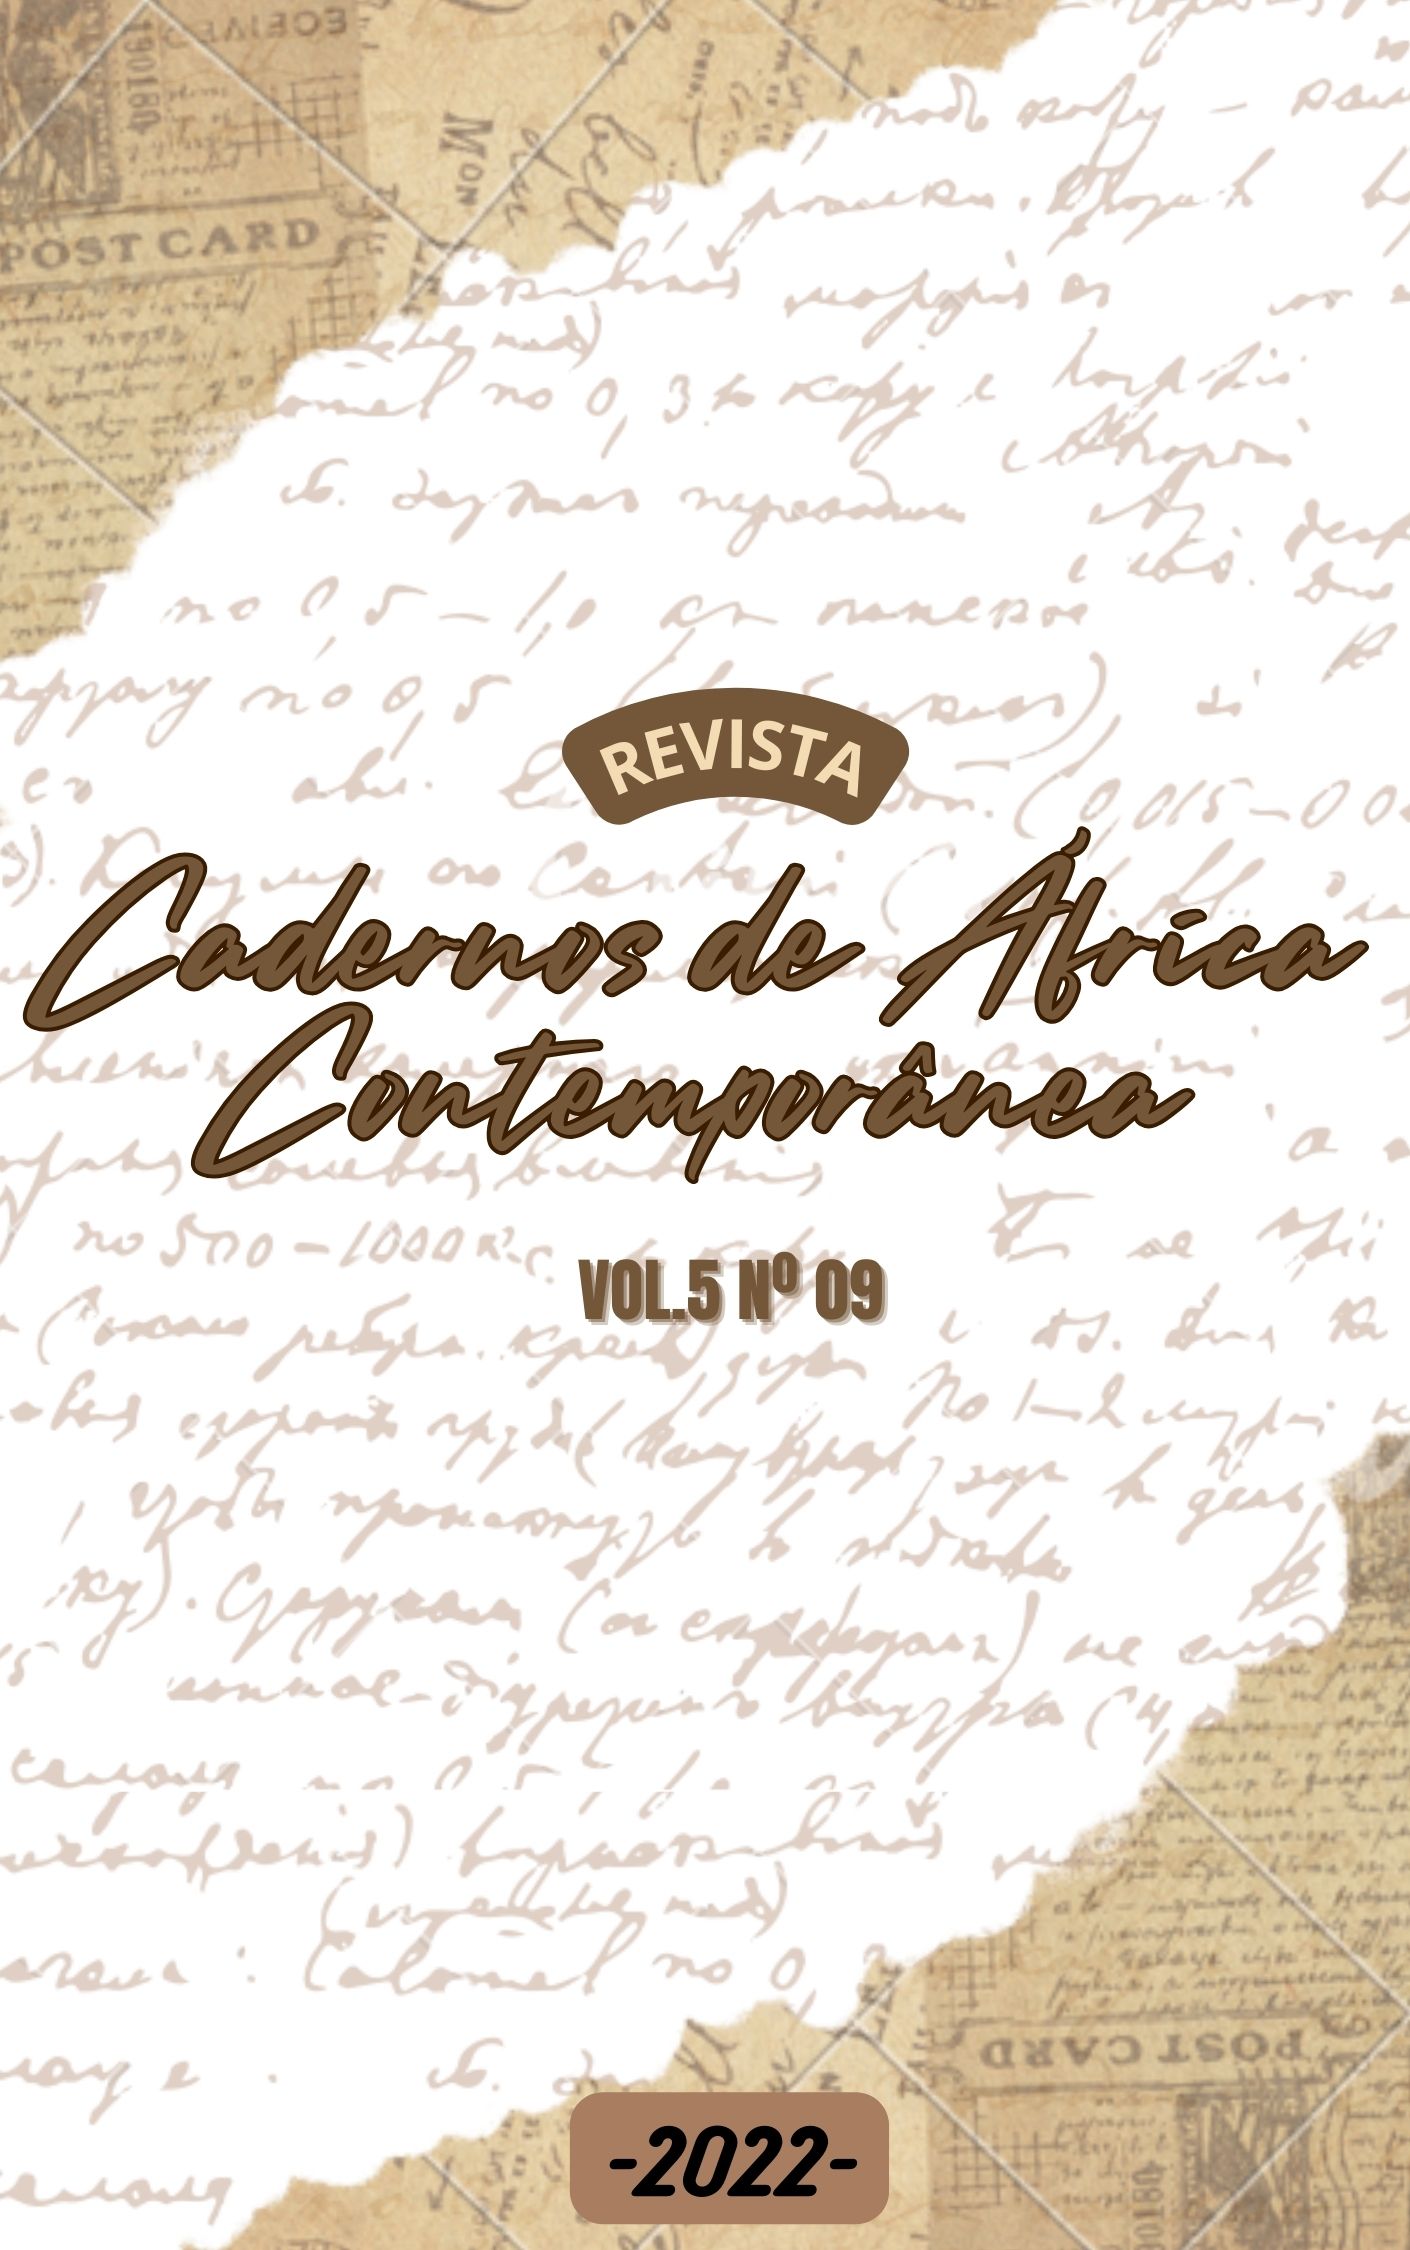 					Visualizza V. 5 N. 09 (2022): Revista Cadernos de África Contemporânea
				